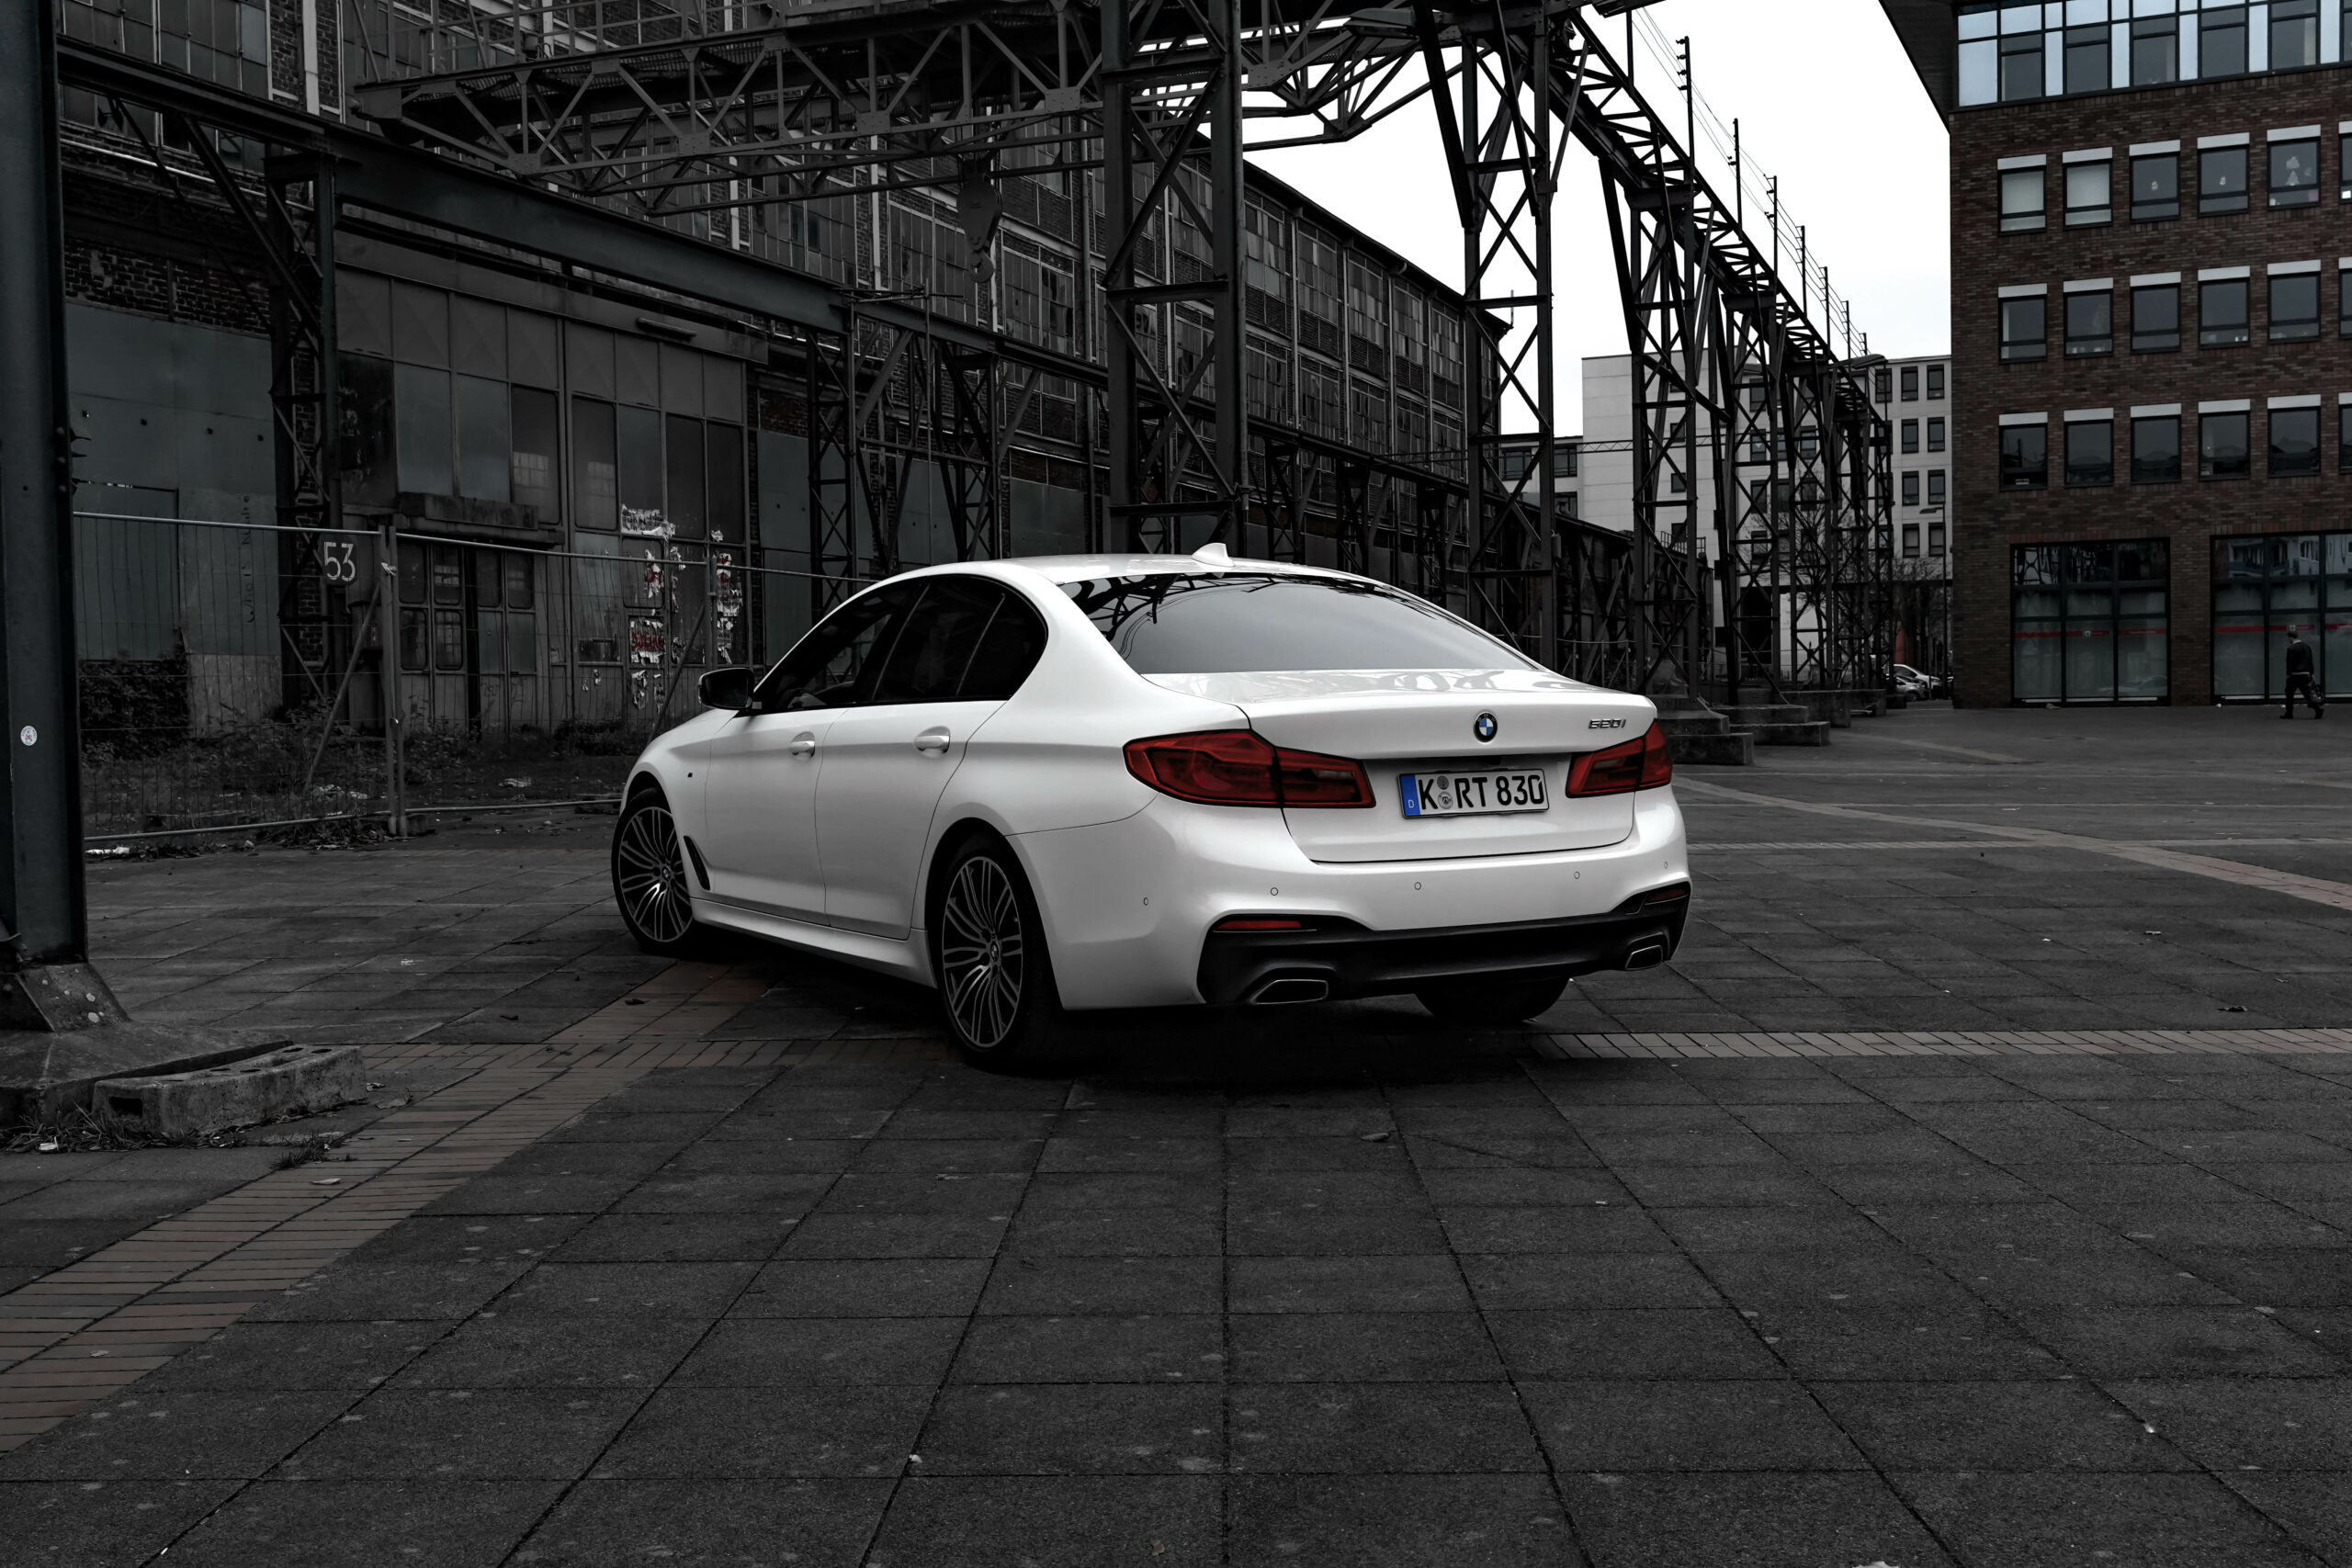 BMW 520i back